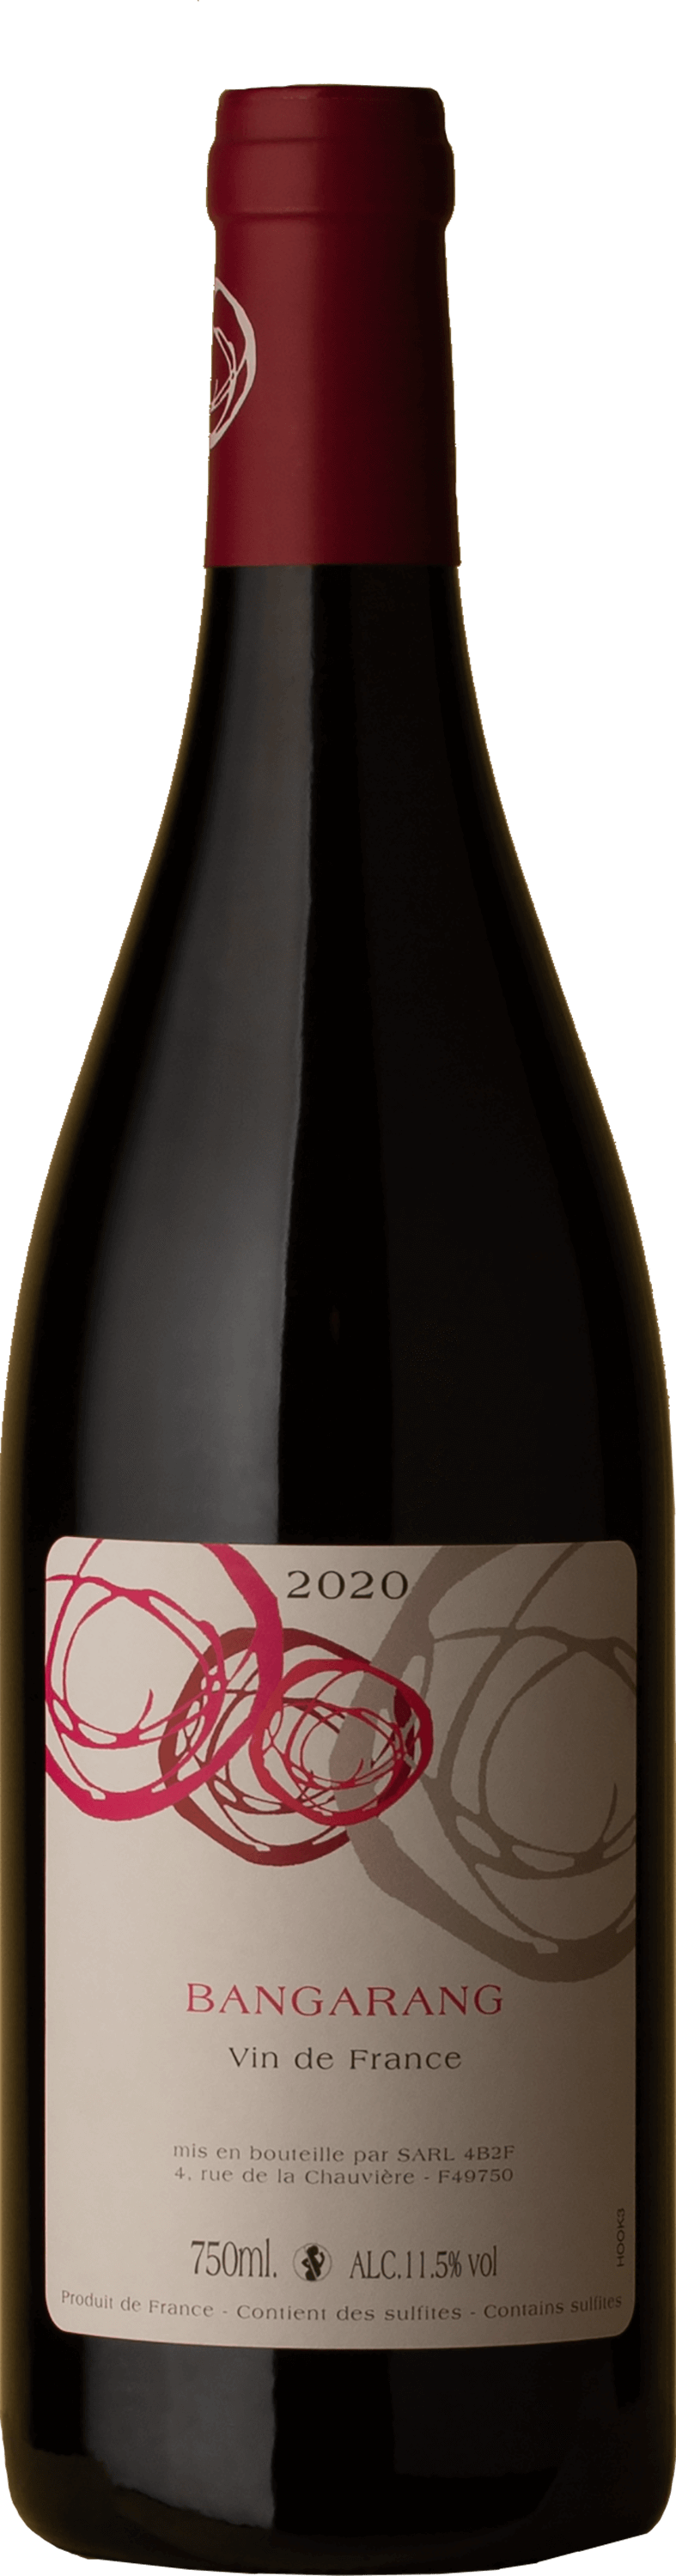 Mosse - Bangarang Primeur Rouge 2020 Red Wine